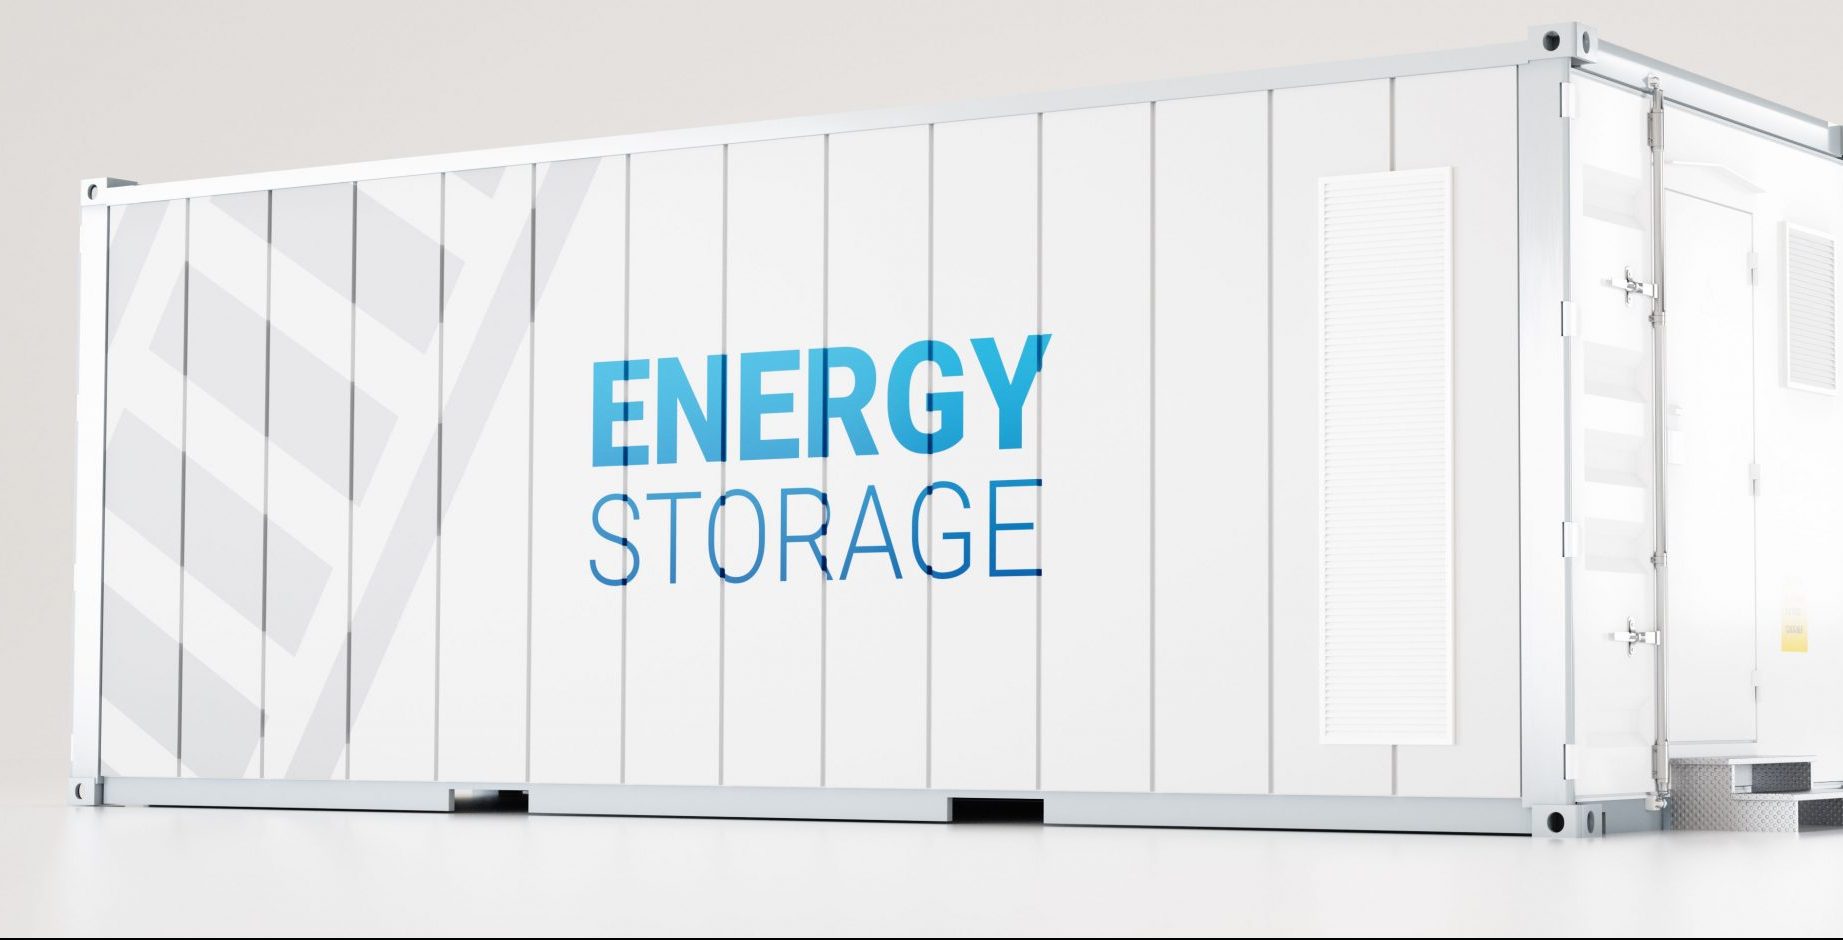 Energy Storage